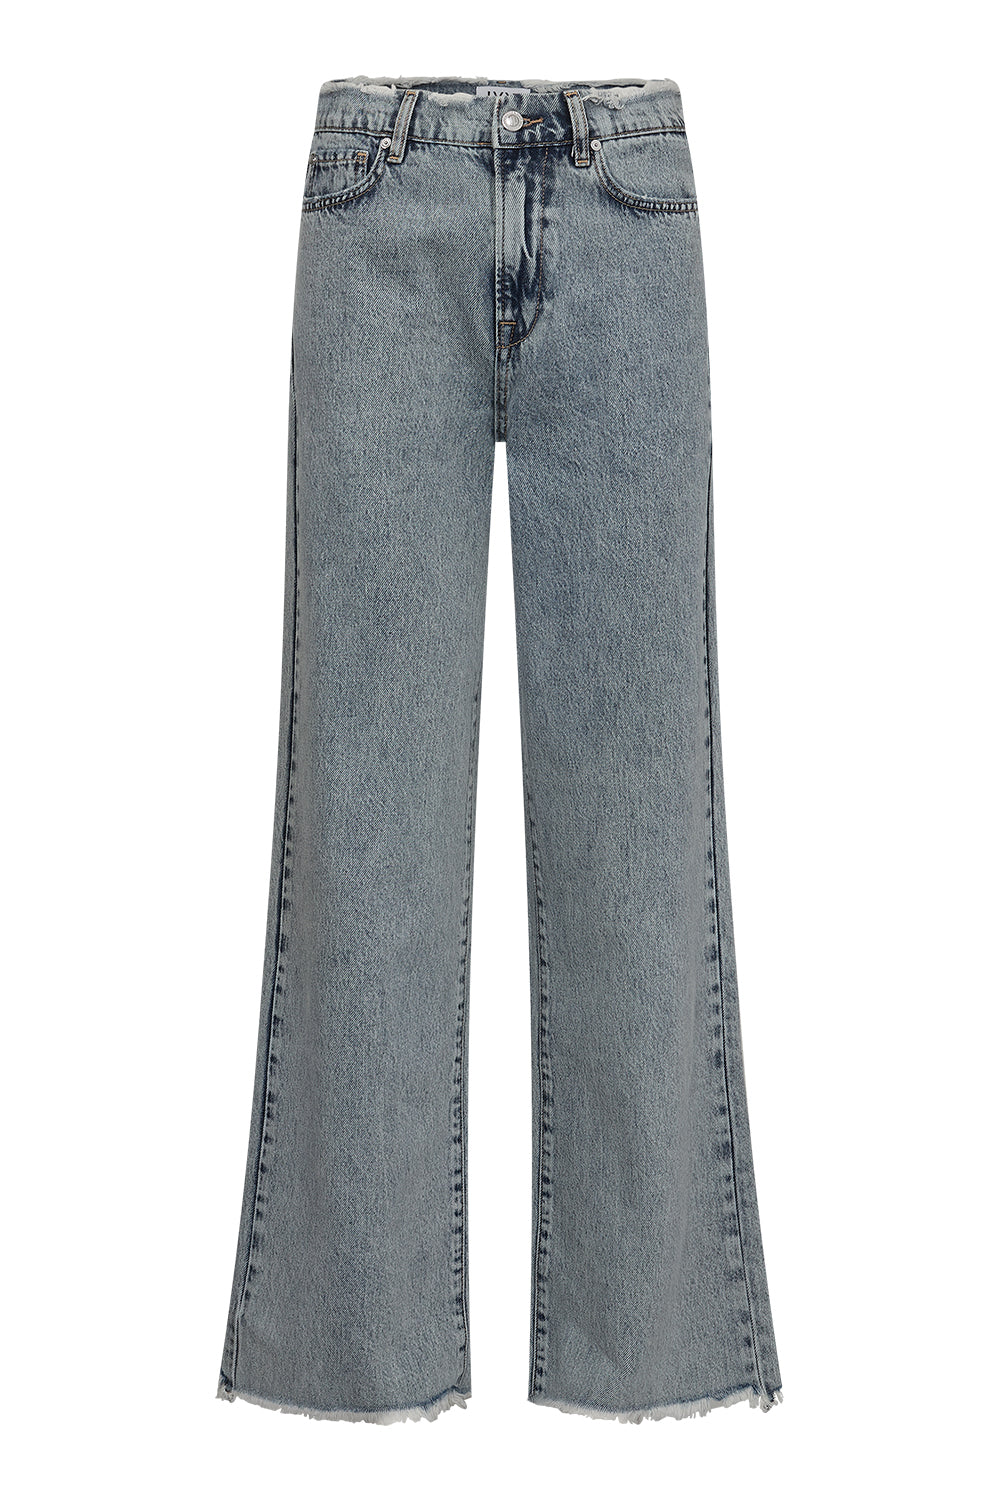 IVY Copenhagen IVY-Augusta Jeans Wash Bright Saint Joseph Jeans & Pants 51 Denim Blue